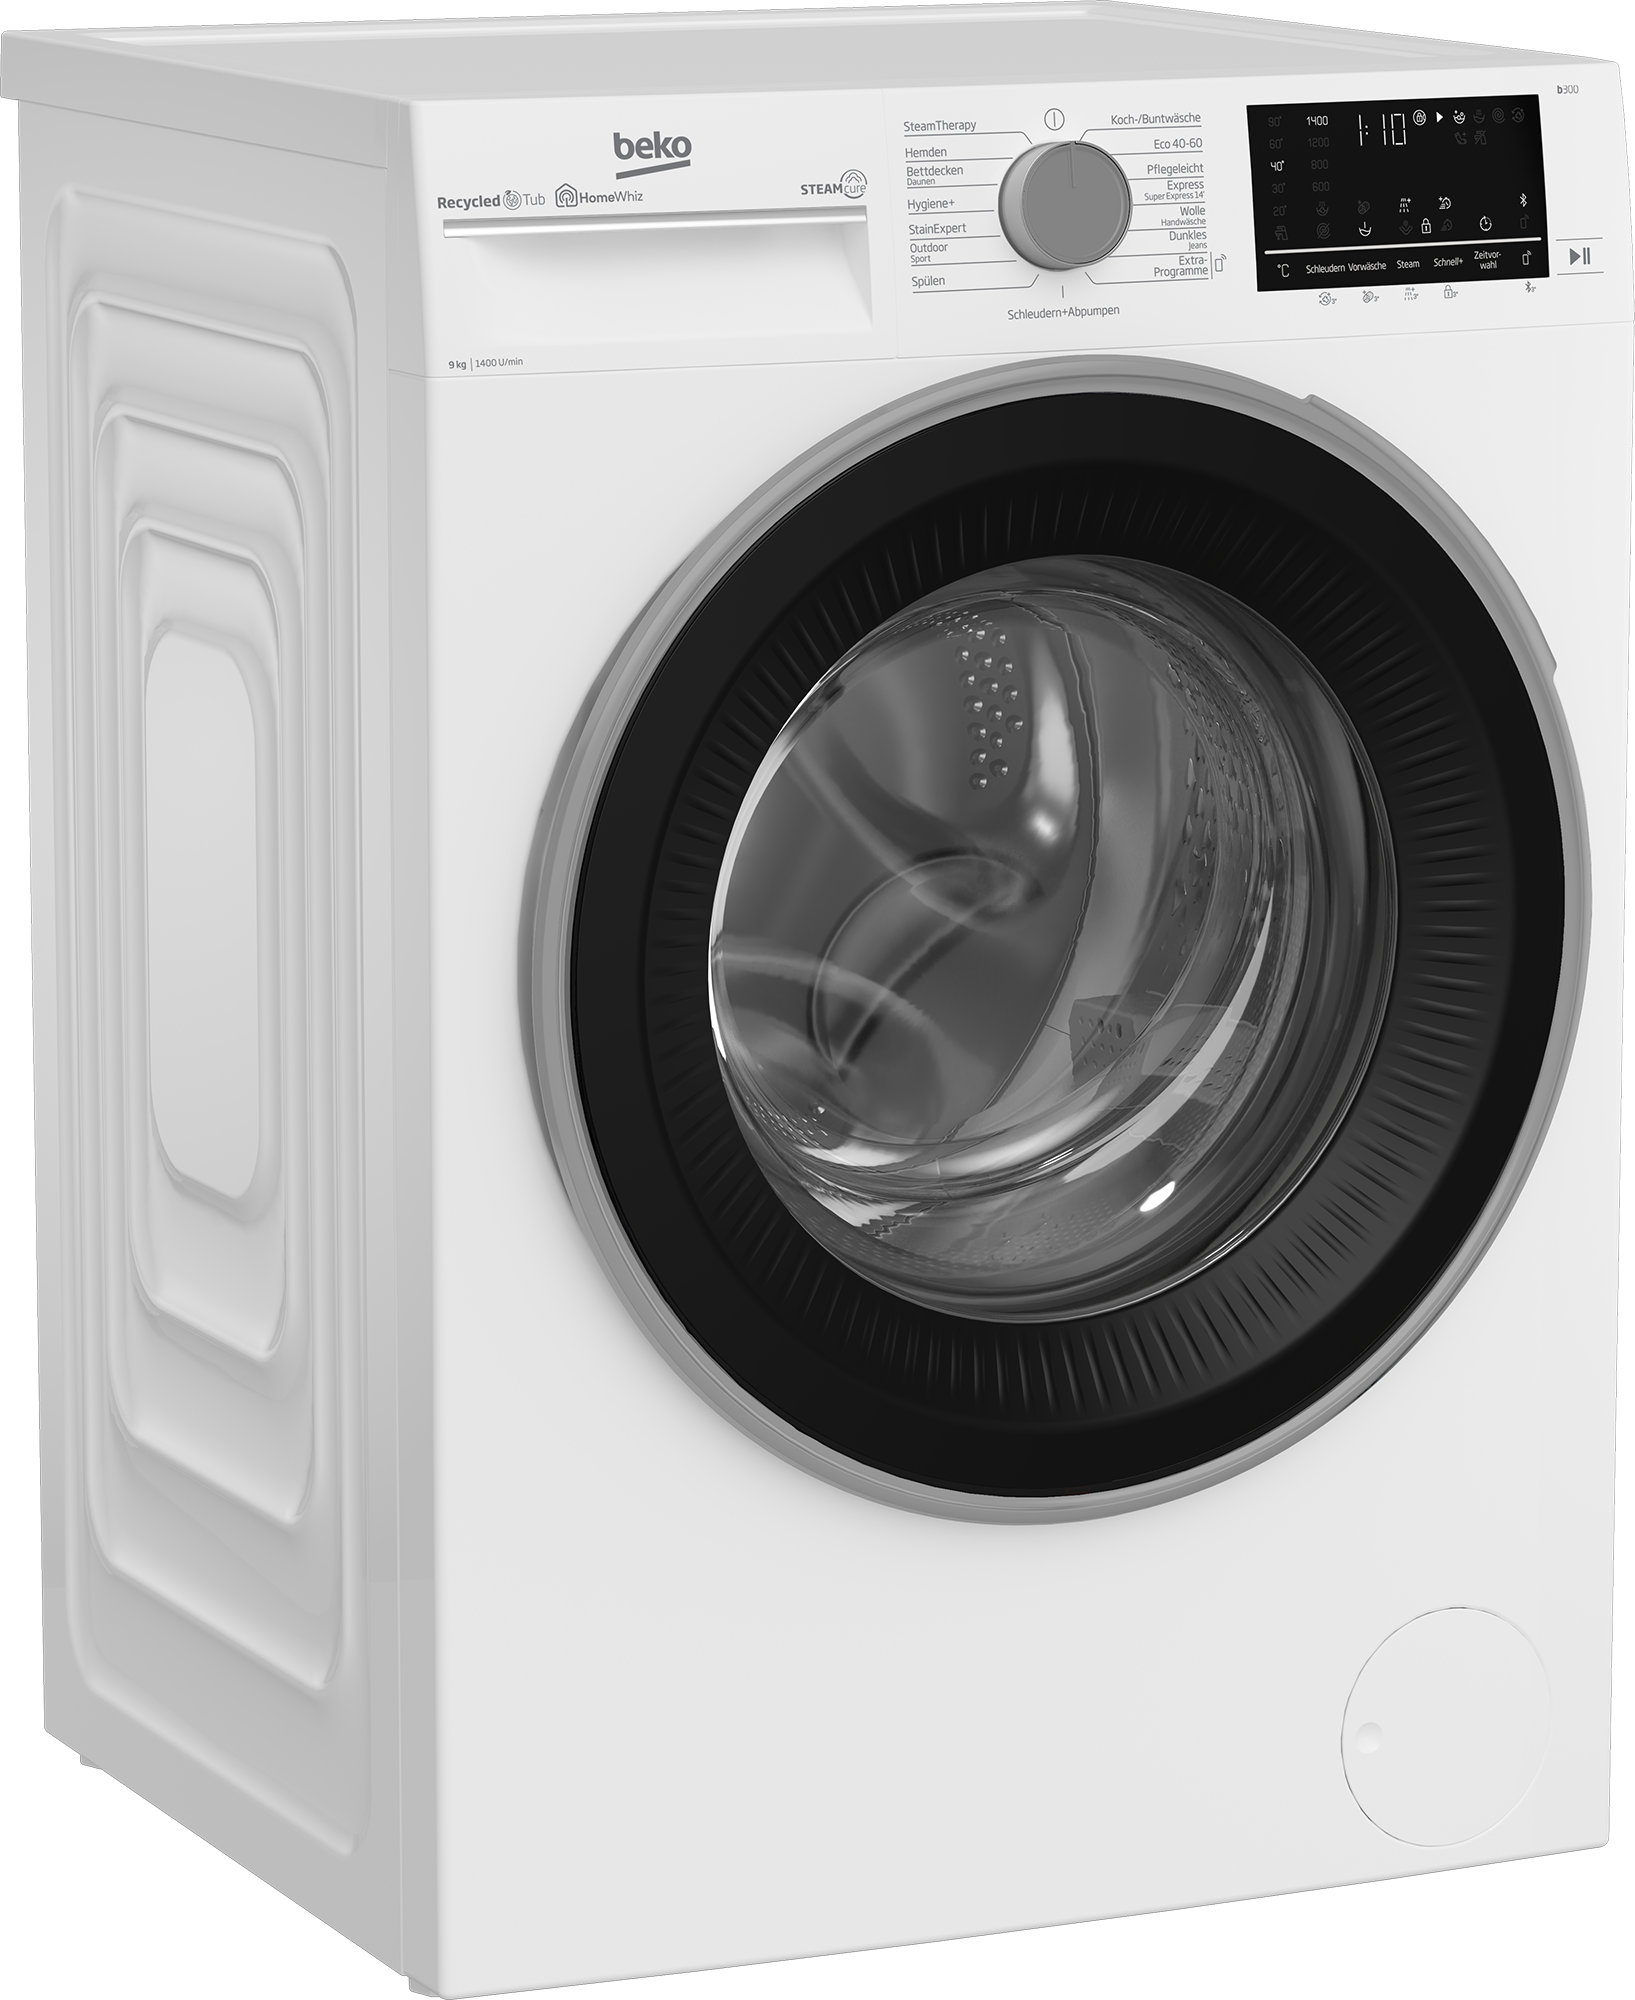 BEKO Waschmaschine, b300, B3WFU59415W2, online 1400 9 - 99% U/min, SteamCure allergenfrei kaufen kg